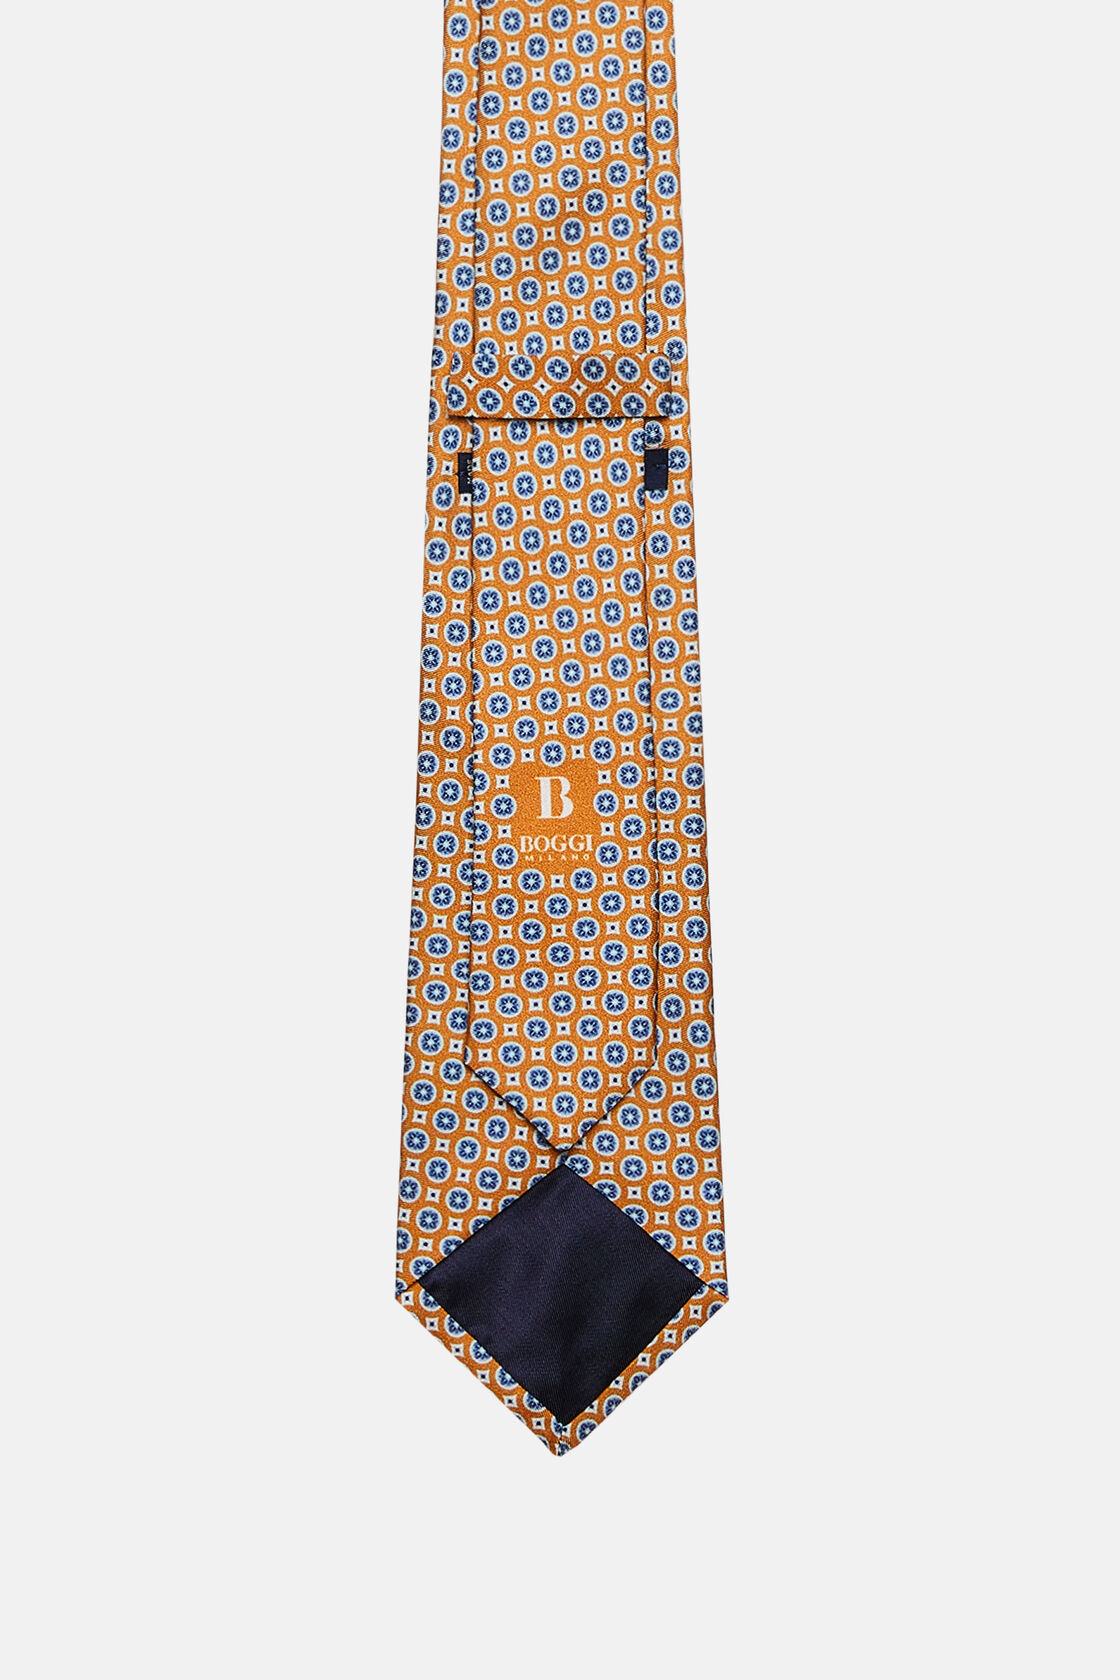 Μεταξωτή γραβάτα με μοτίφ τύπου μενταγιόν, Orange, hi-res